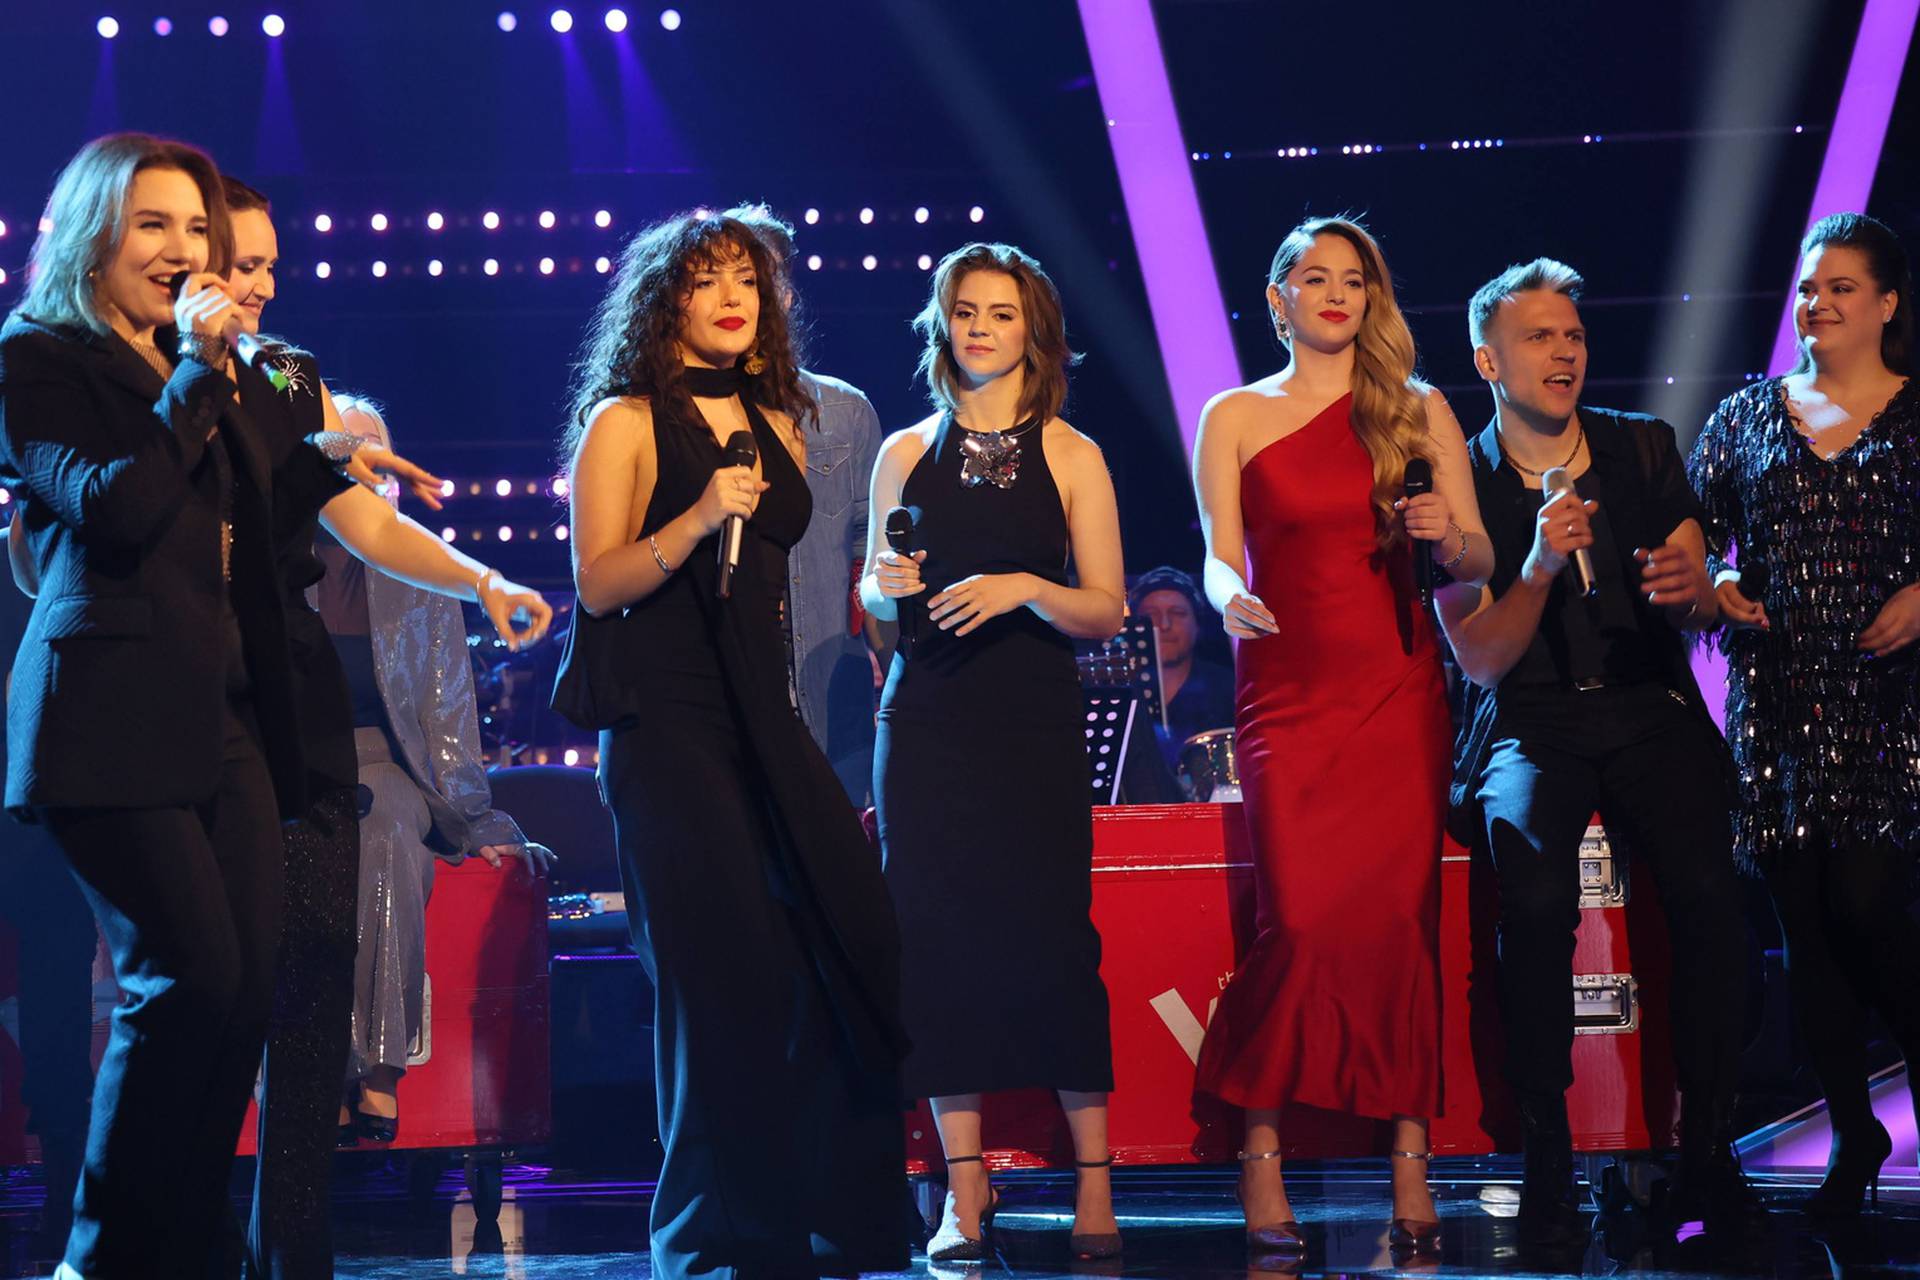 ANKETA Osmero kandidata je napustilo natjecanje 'The Voice': Smatrate li da su to i zaslužili?